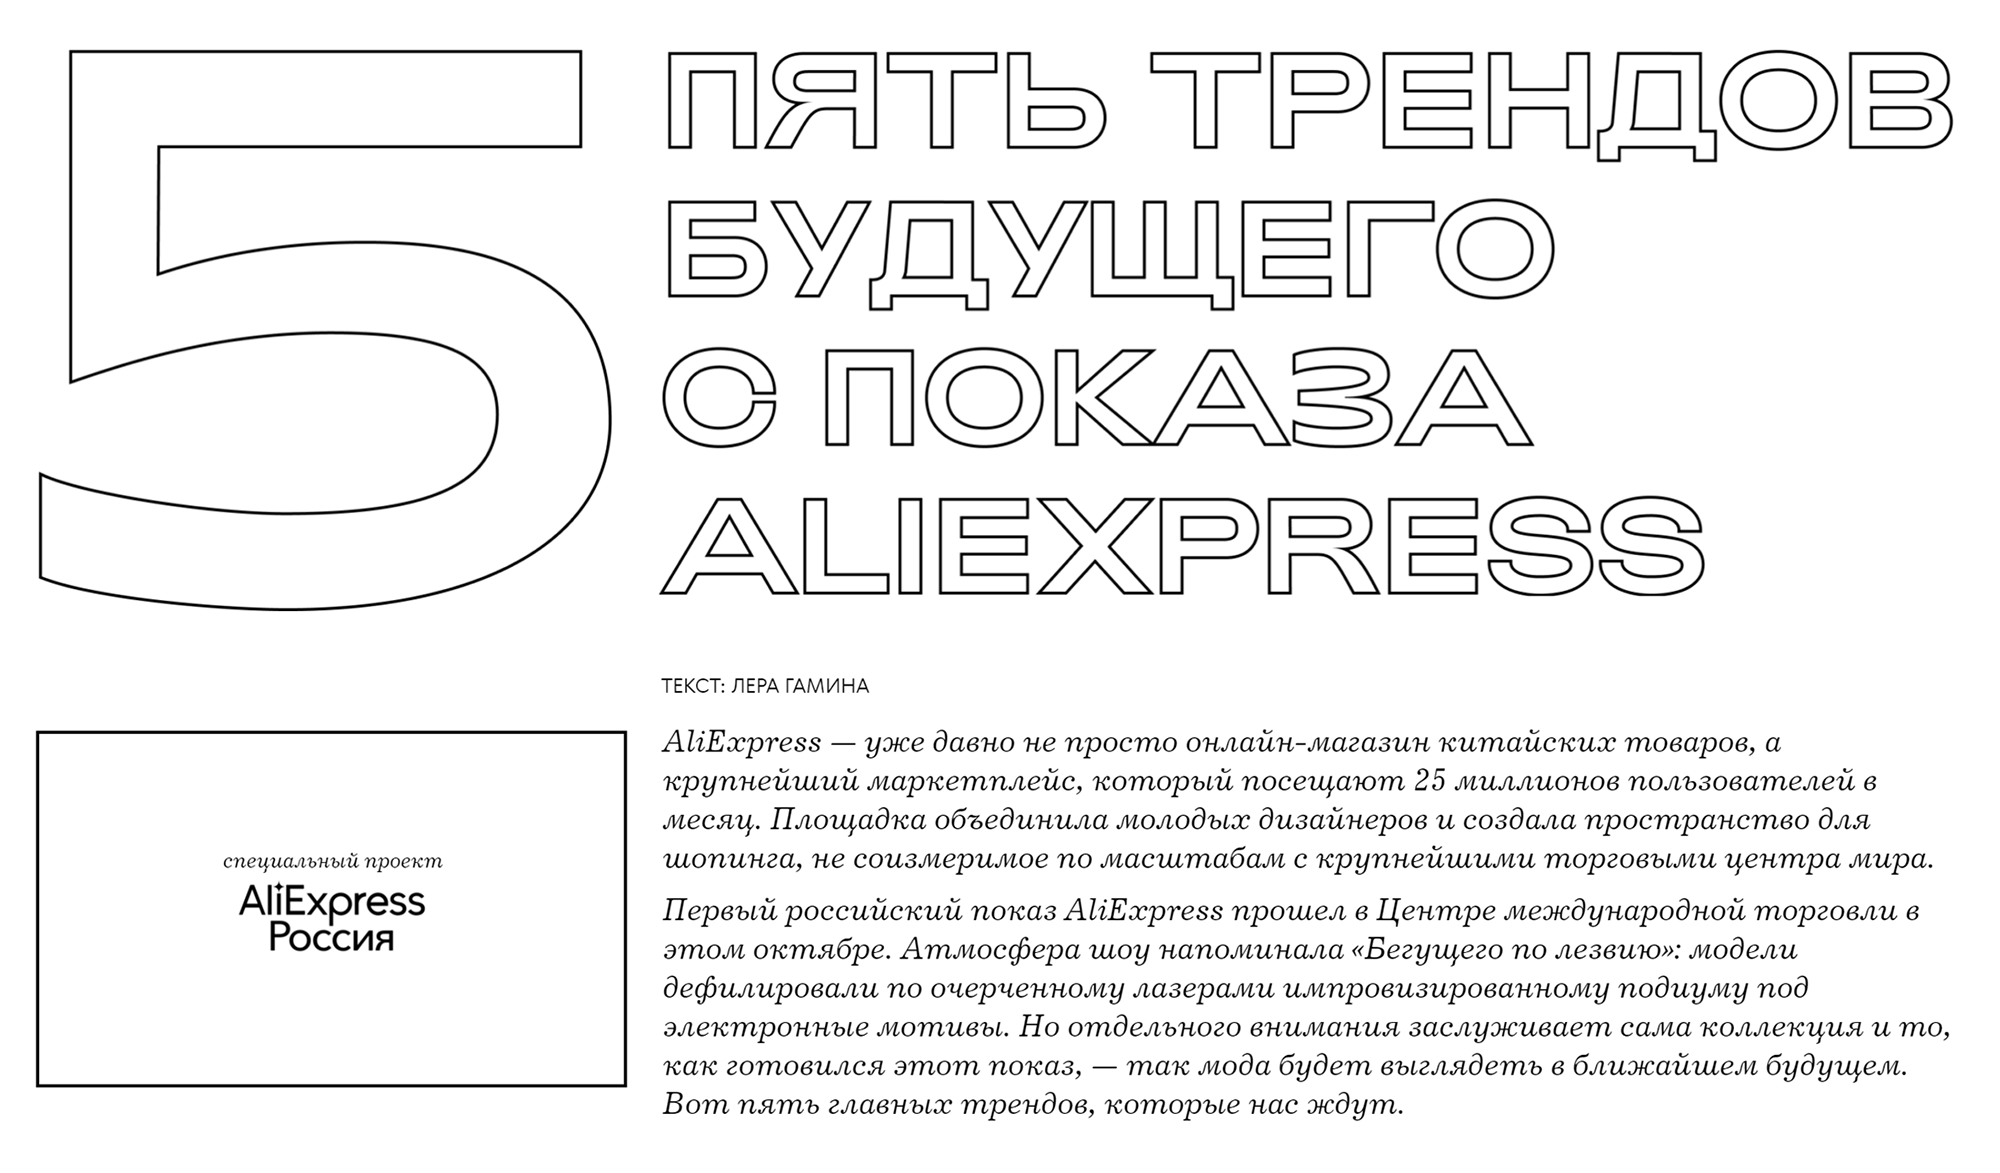 А это публикация про «Алиэкспресс» на «Блюпринте». О ней рассказываю дальше. Источник: theblueprint.ru